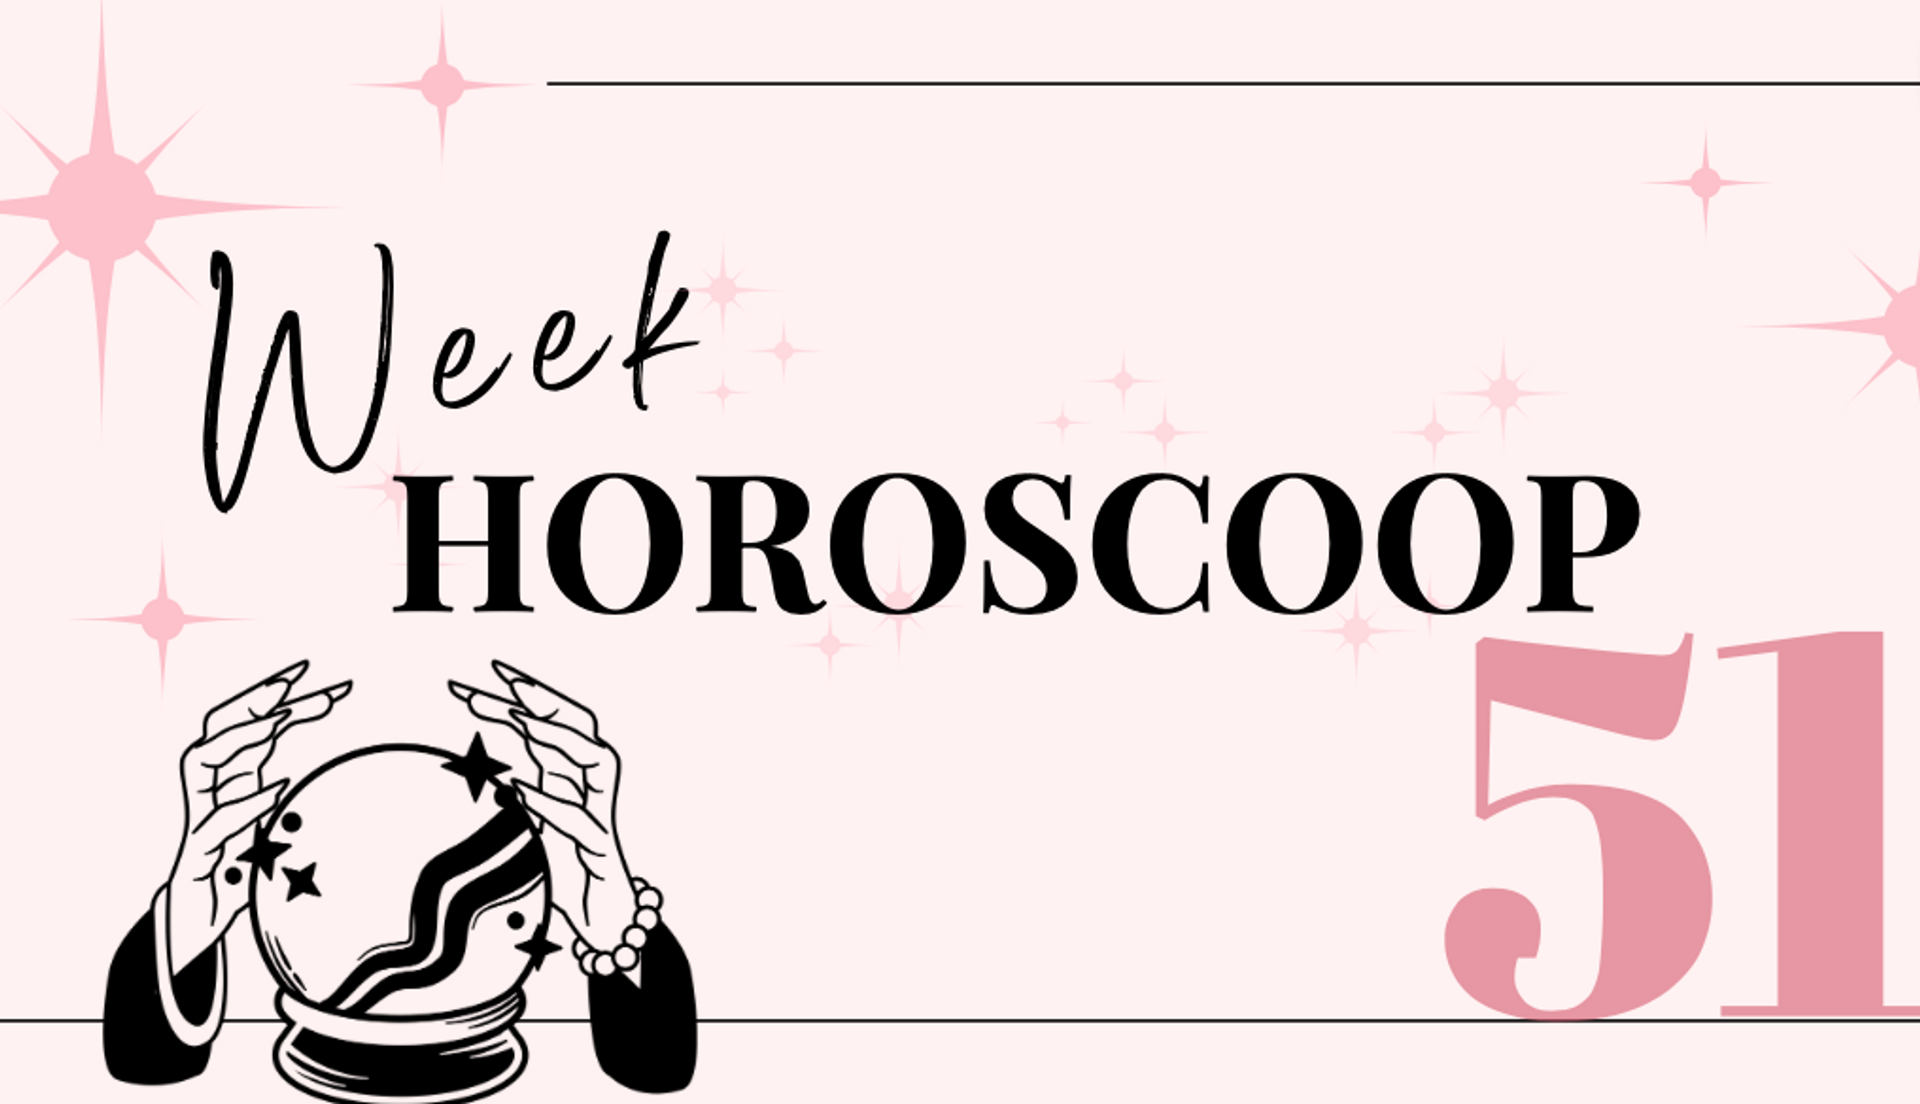 weekhoroscoop-week-51